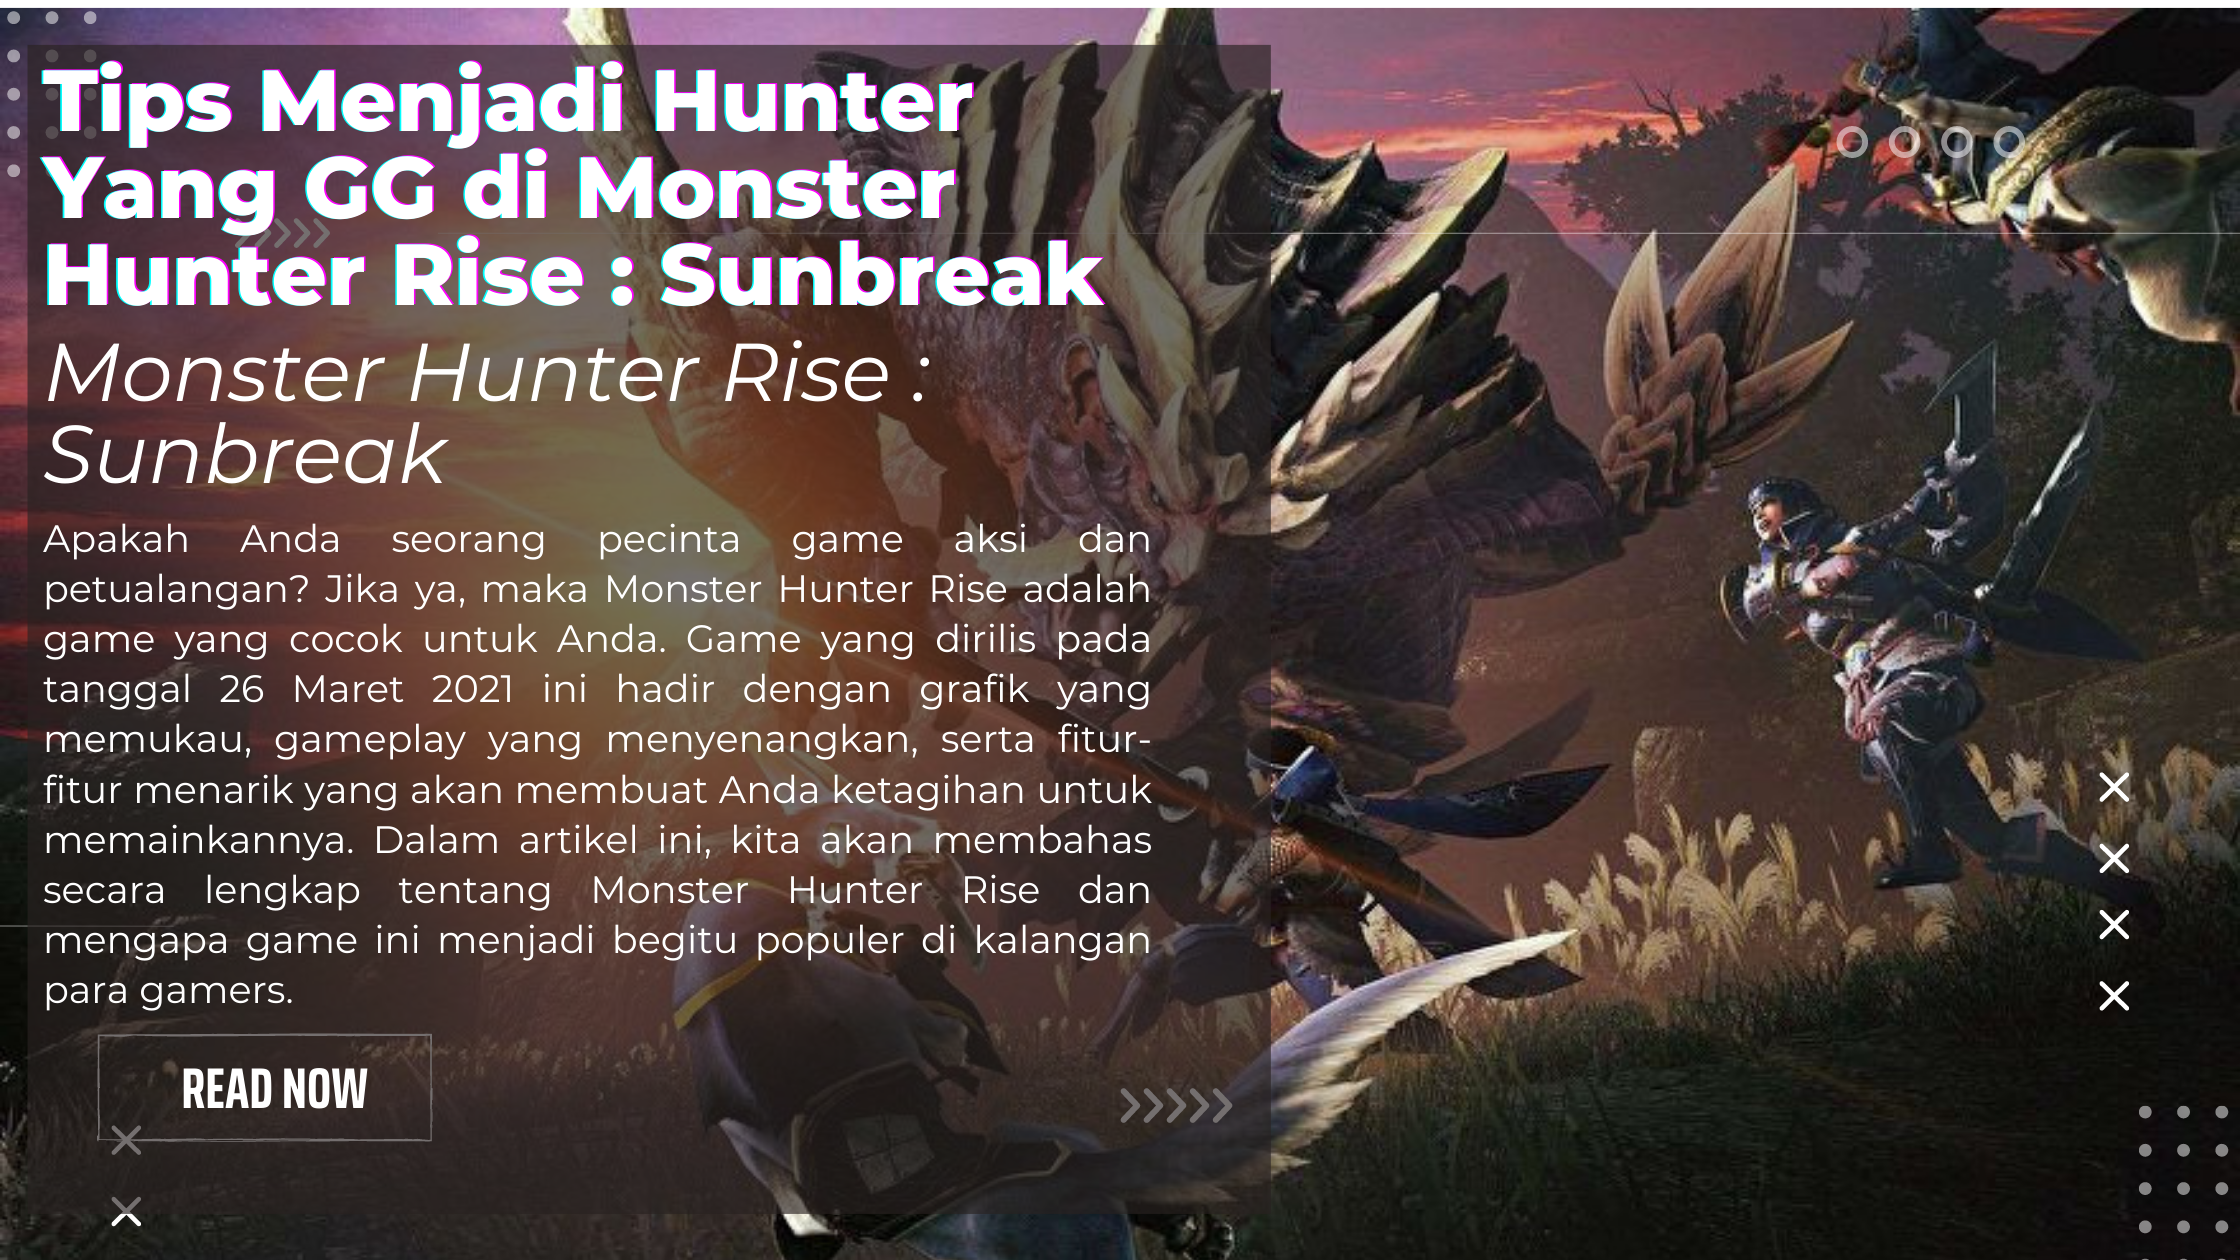 Tips Menjadi Hunter Yang GG di Monster Hunter Rise : Sunbreak